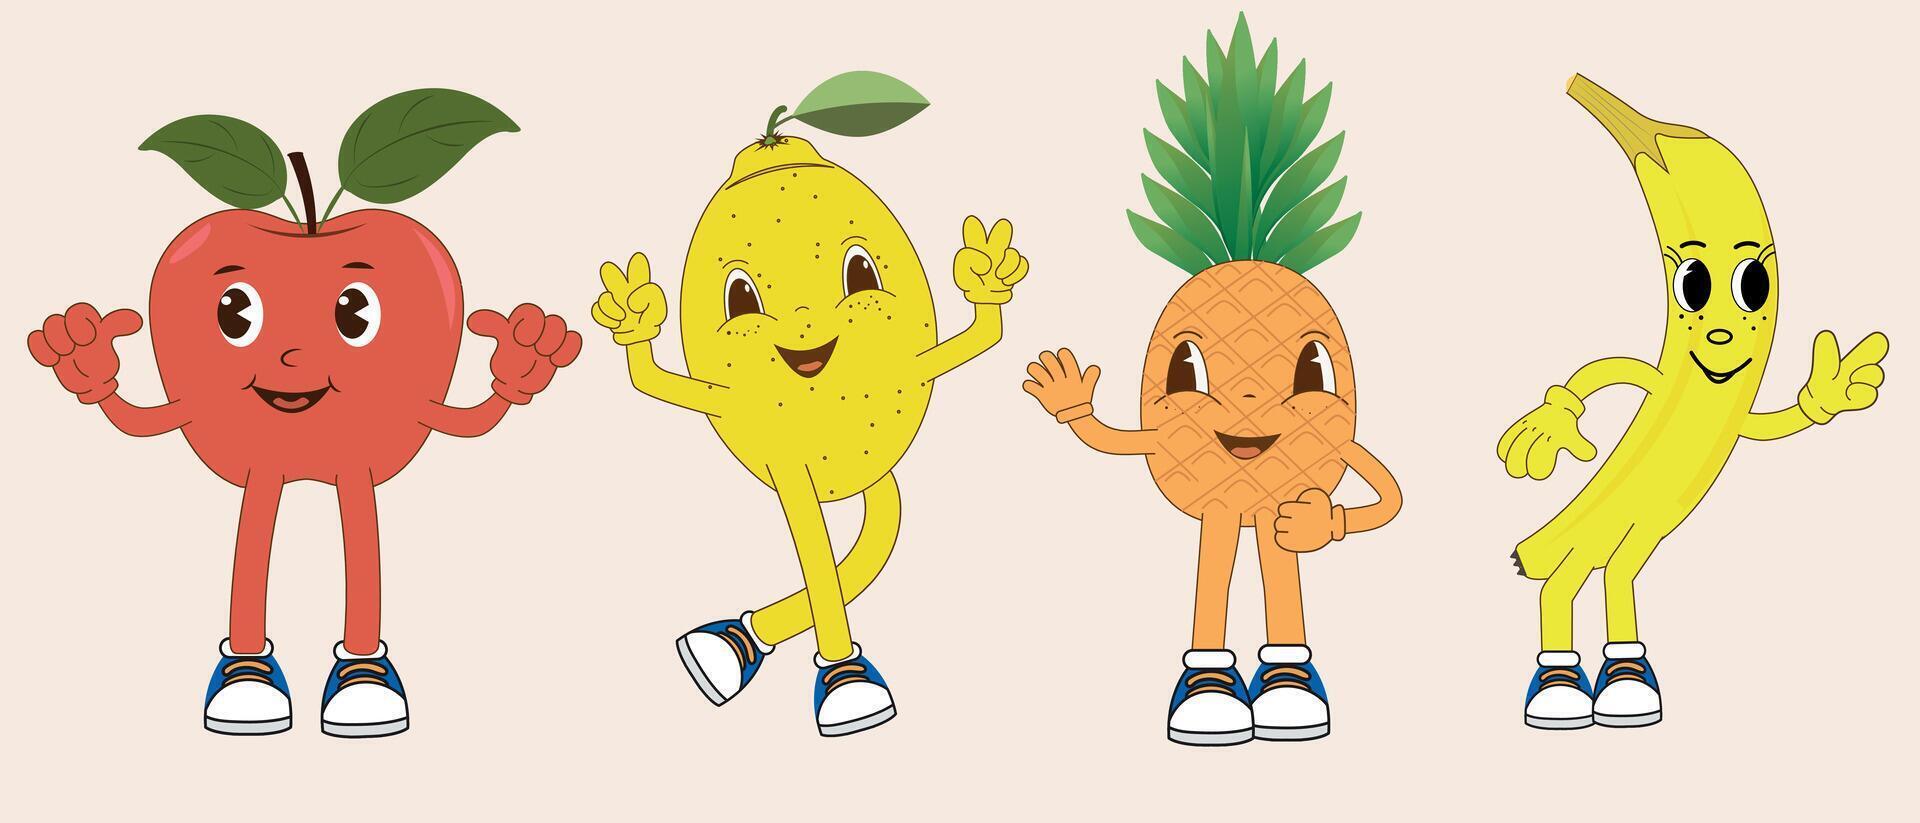 uppsättning av rolig retro tecknad serie frukt tecken i annorlunda poser och känslor. äpple, banan, citron, ananas. leende frukt maskot vektor illustration.